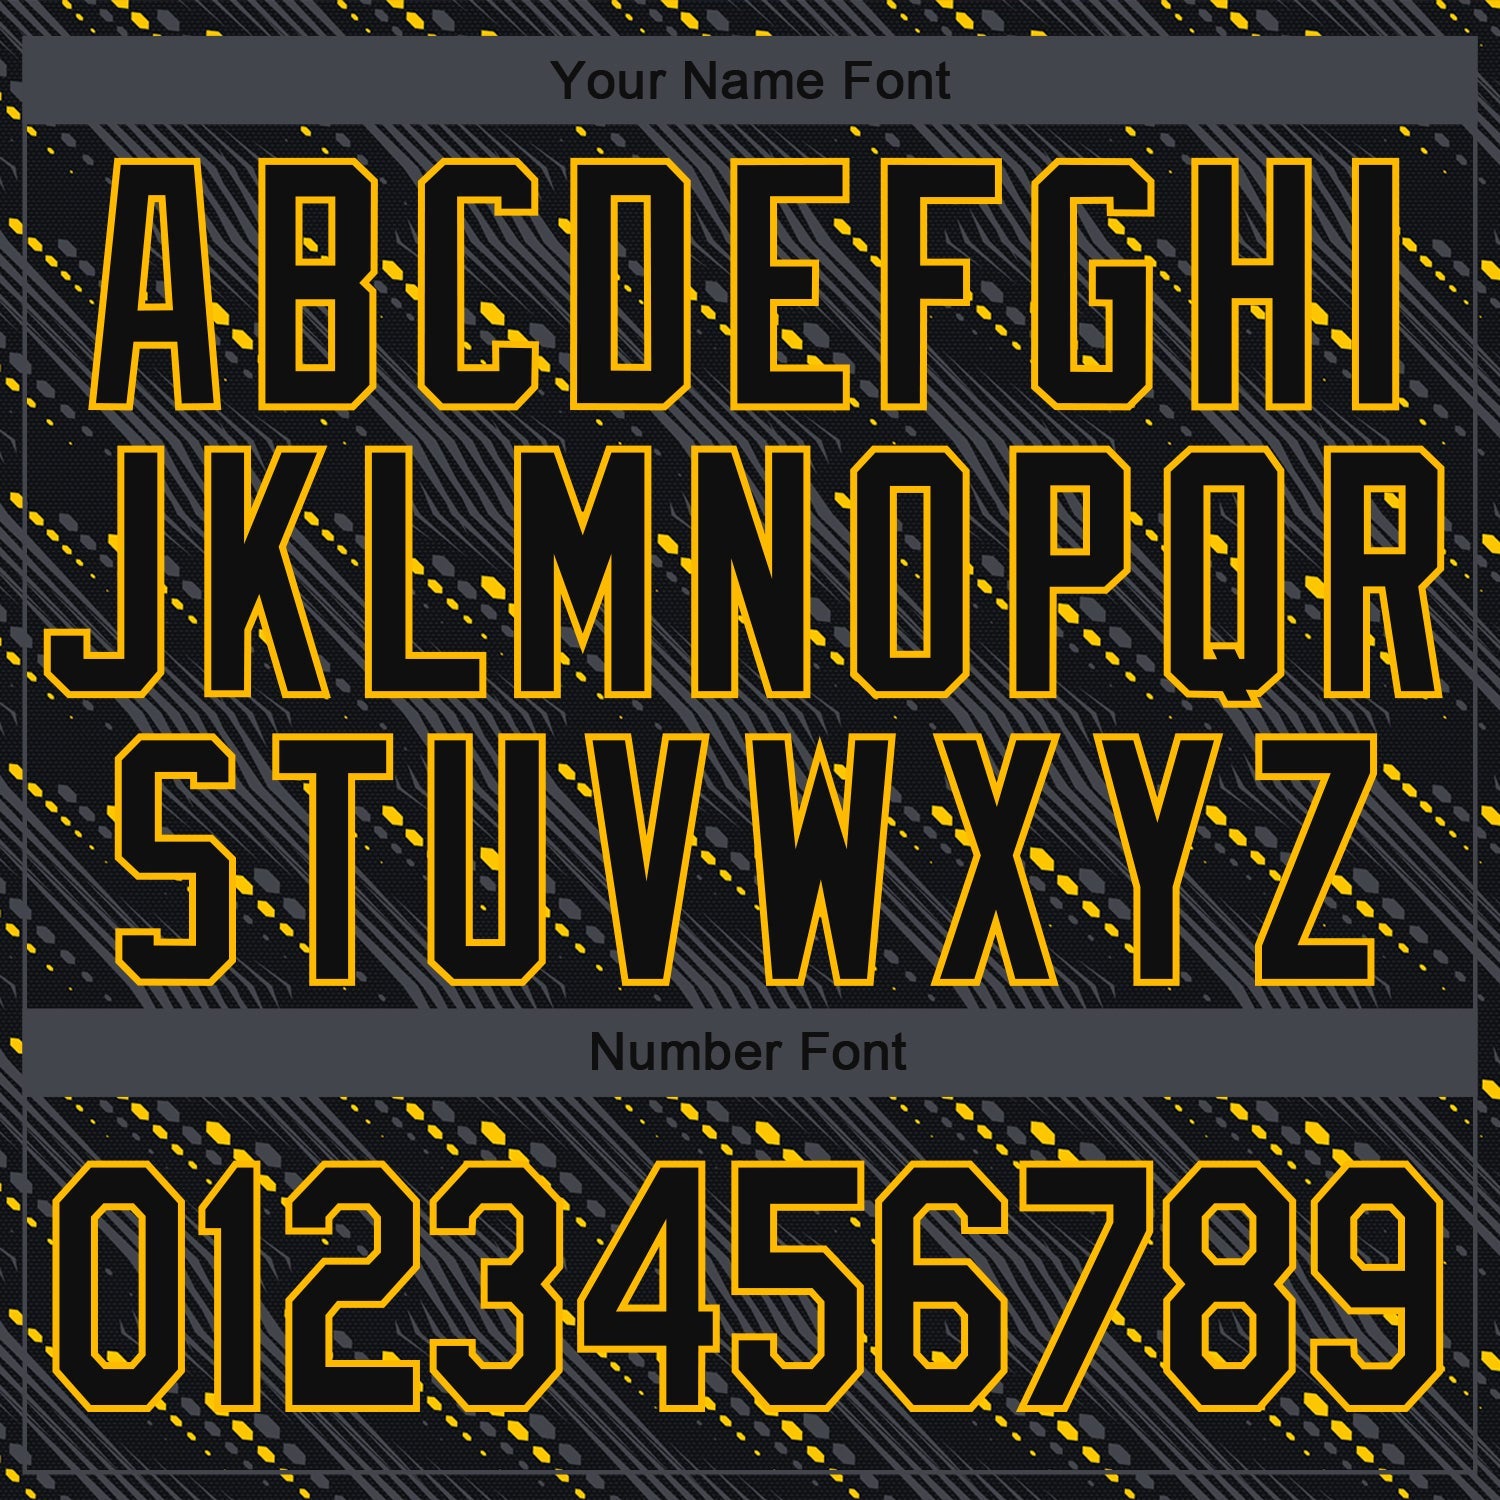 Custom Black Gold 3D Pattern Design Bomber Full-Snap Varsity Letterman Jacket